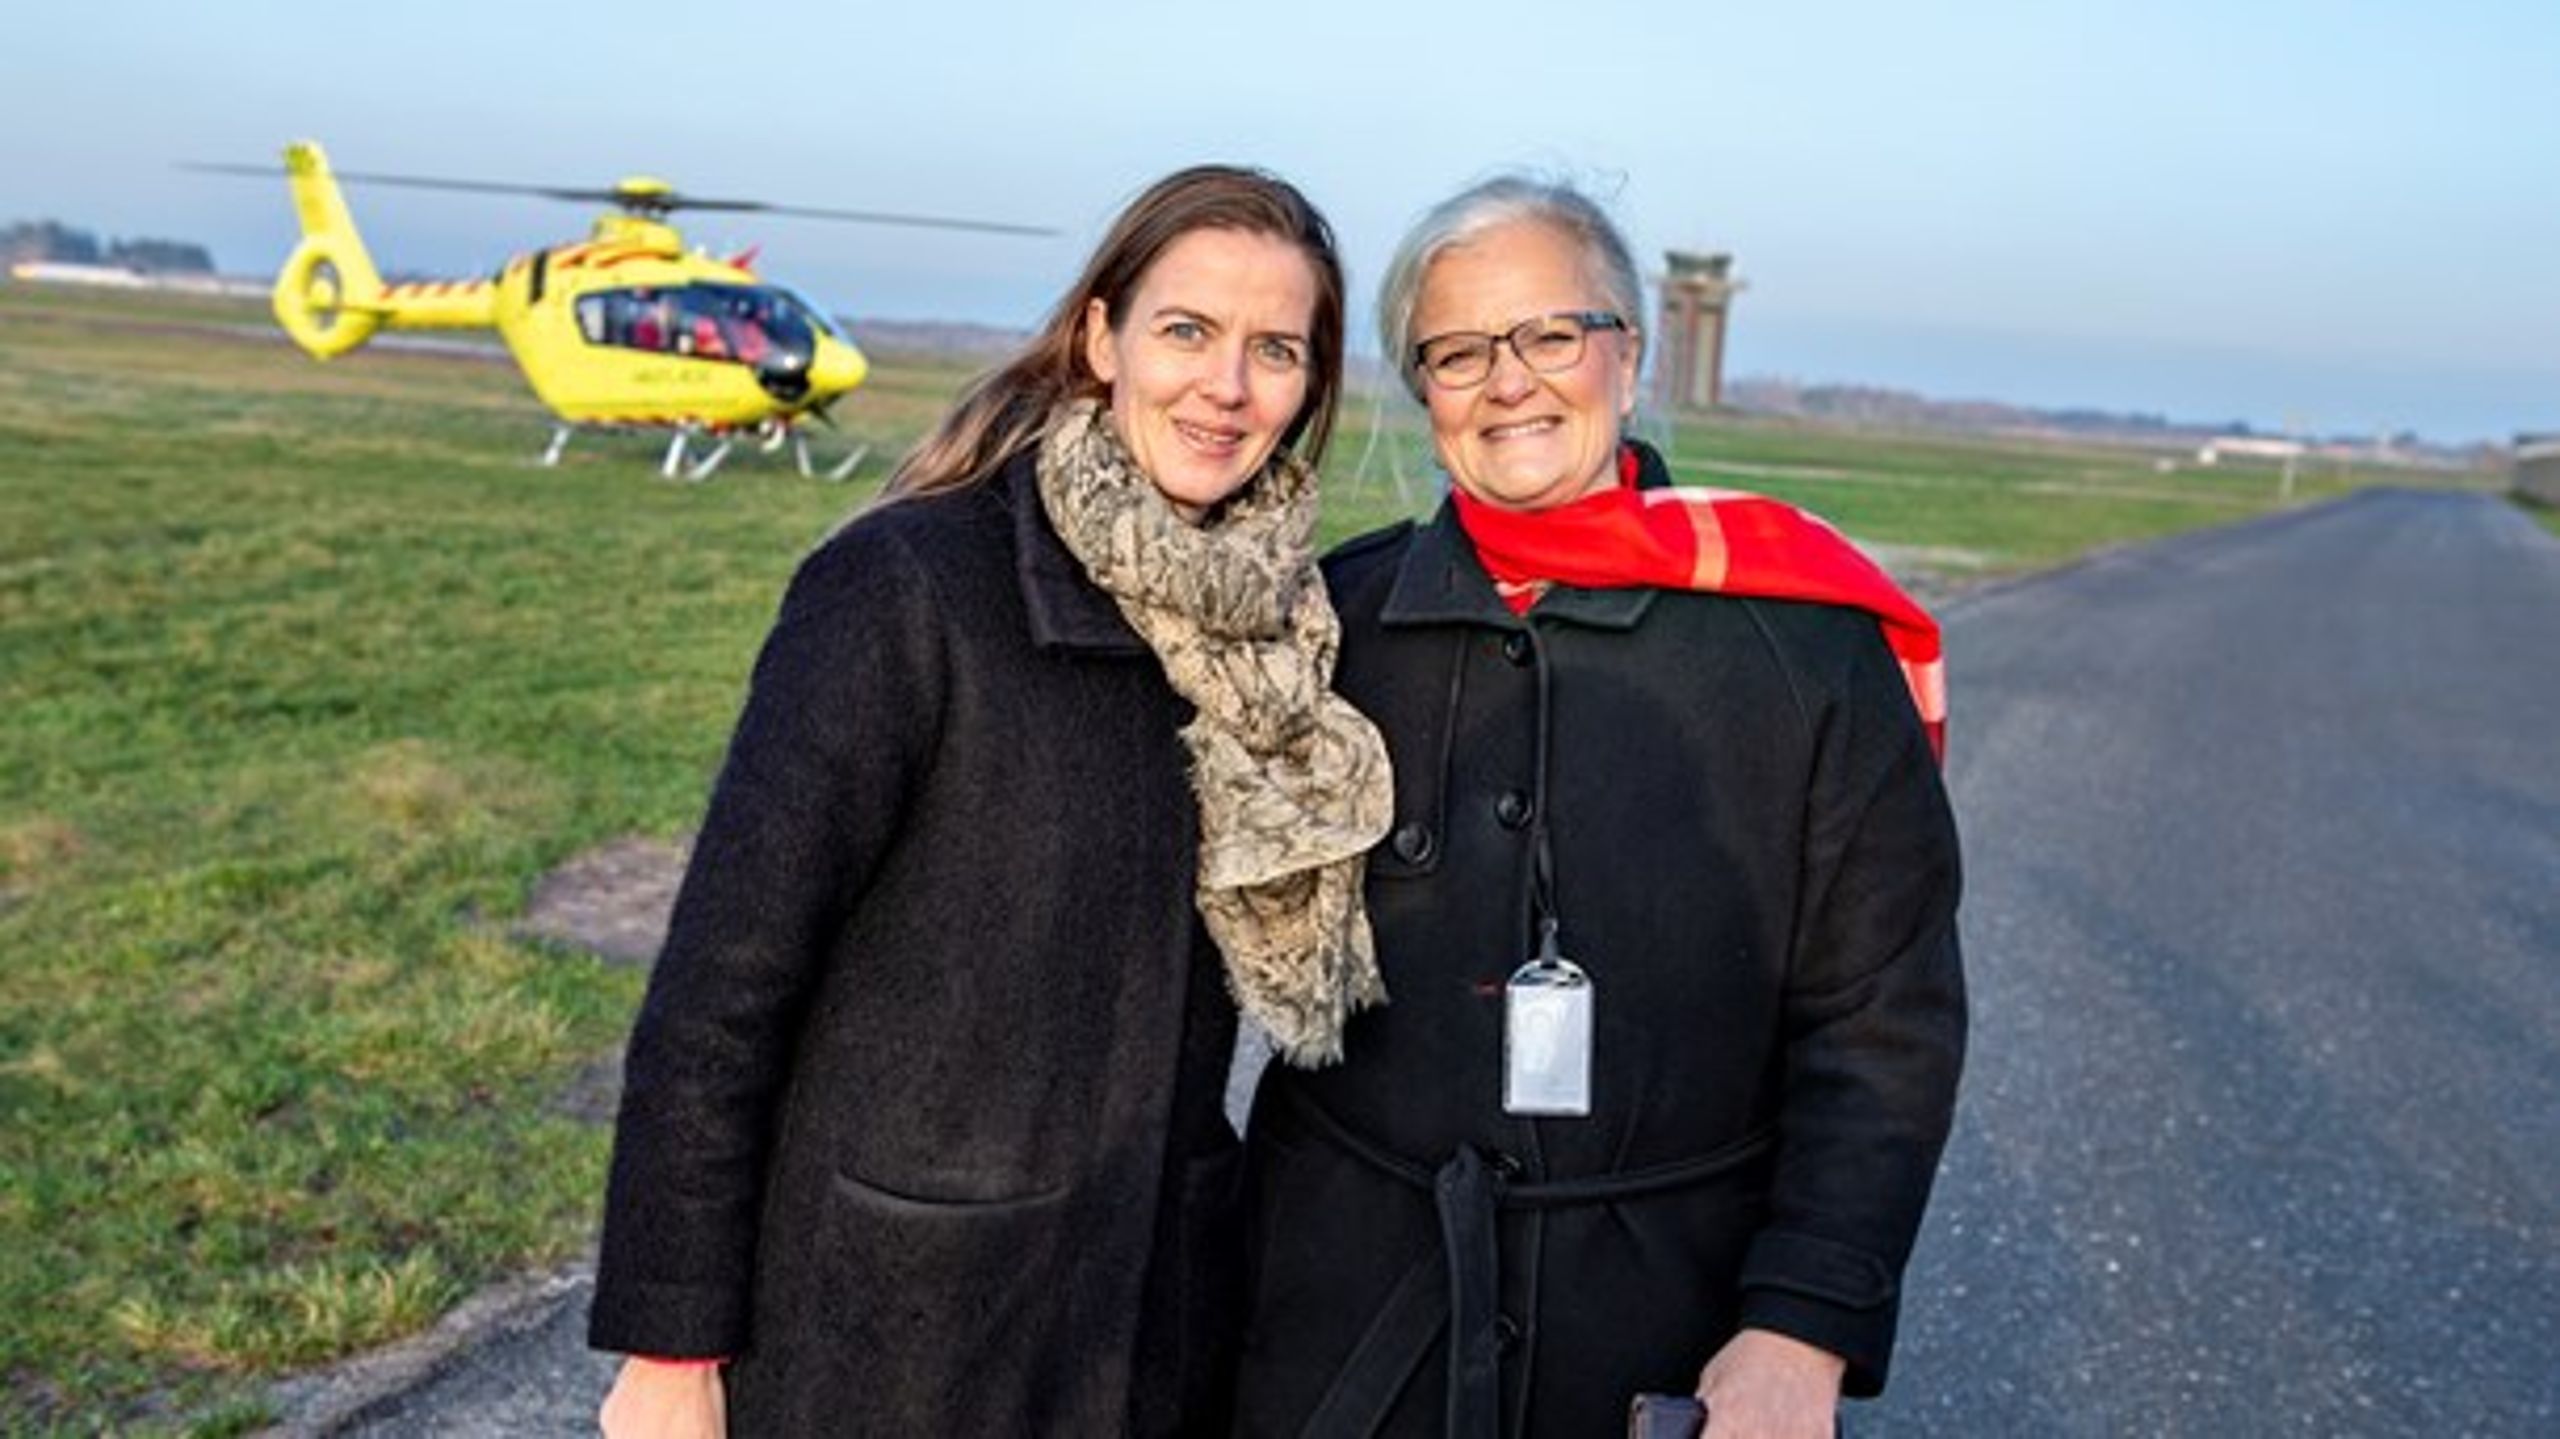 Ellen Trane Nørby (V) og Liselott Blixt (DF) har haft et godt samarbejde, mener Blixt. Her er de til præsentation af ny akutlægehelikopter i Aalborg Lufthavn.